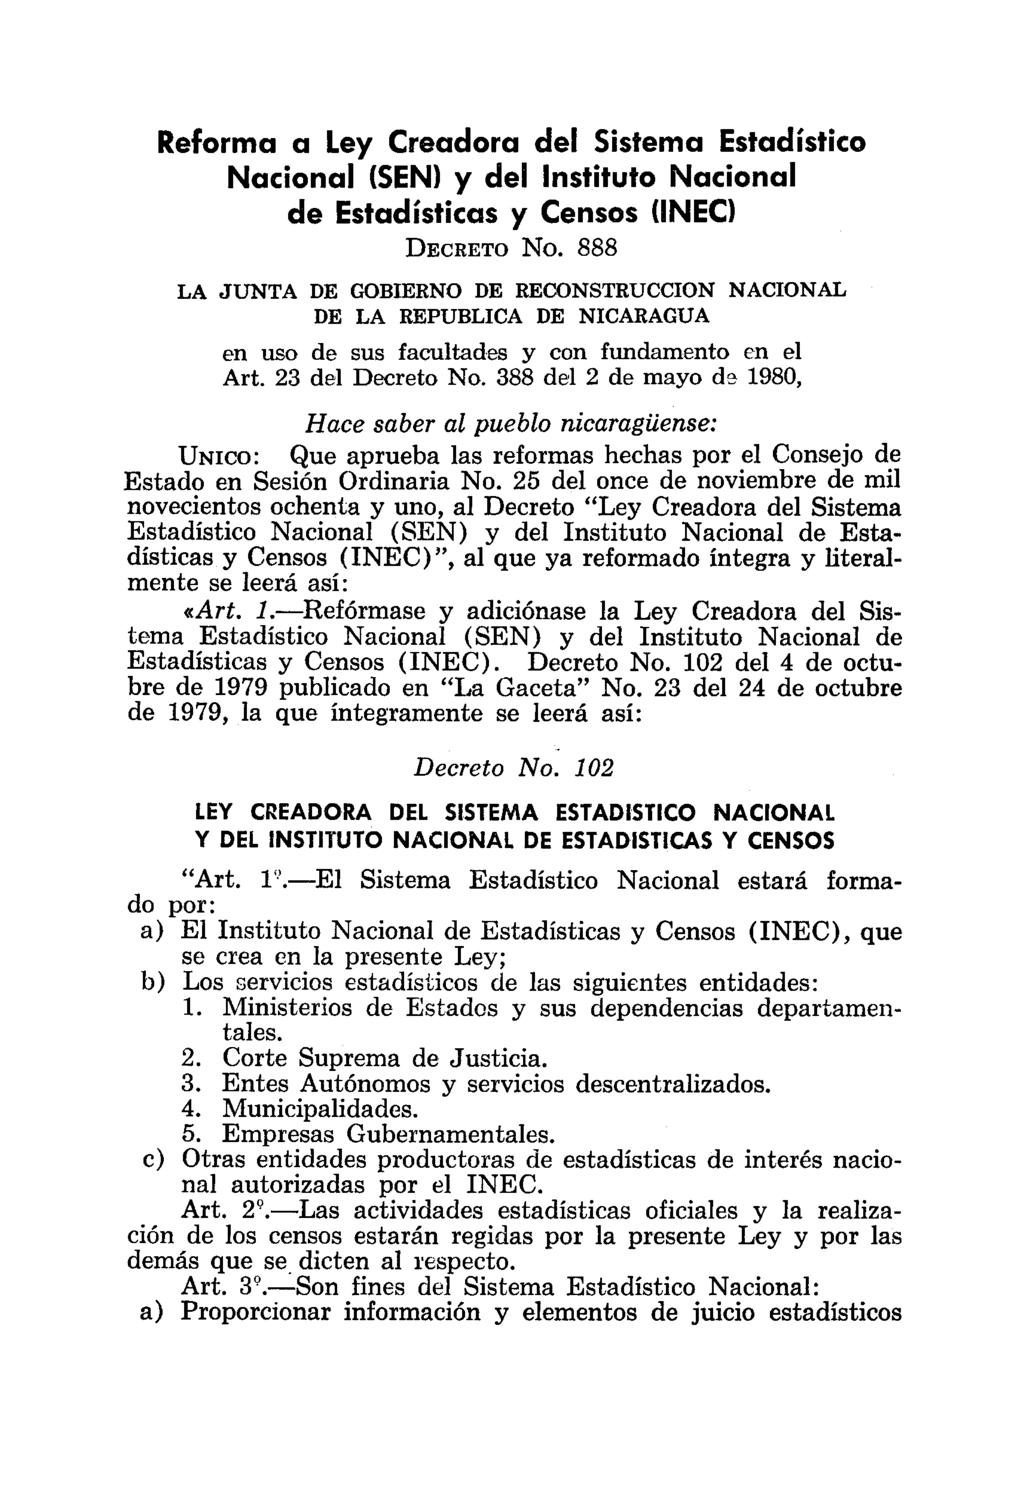 Reforma a Ley Creadora del Sistema Estadístico Nacional (SEN) y del Instituto Nacional de Estadísticas y Censos linec) DECRETO No.